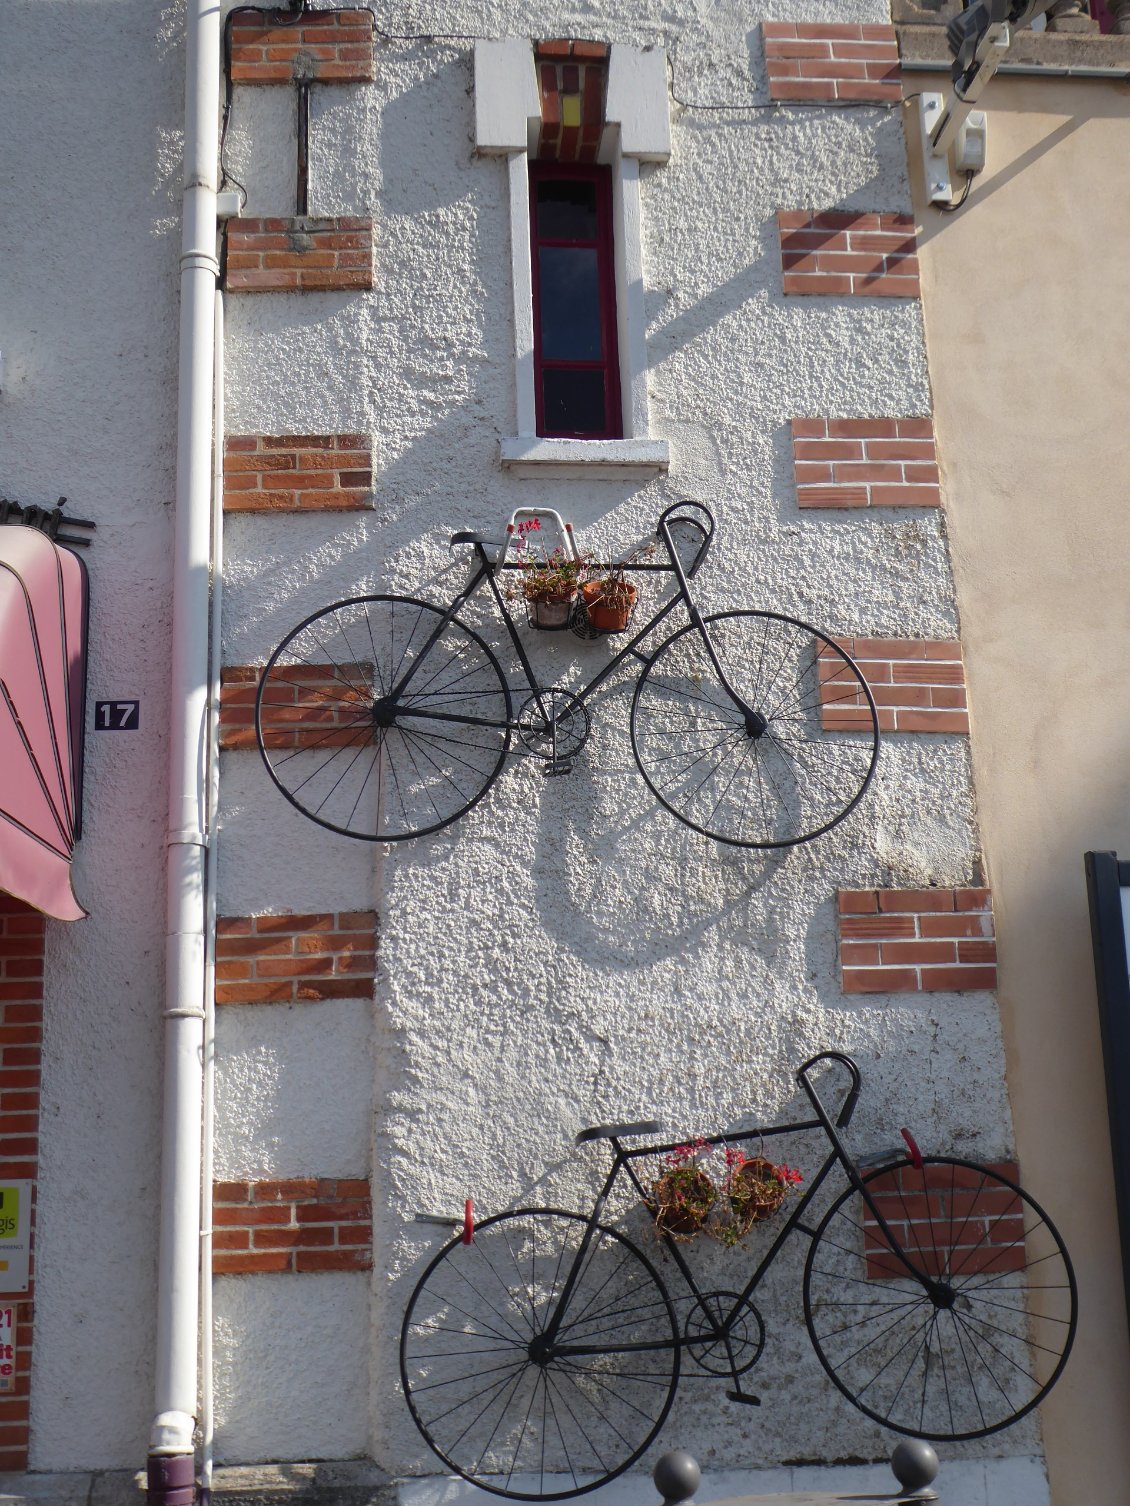 à Bourbon-Lancy, on aime le vélo...!